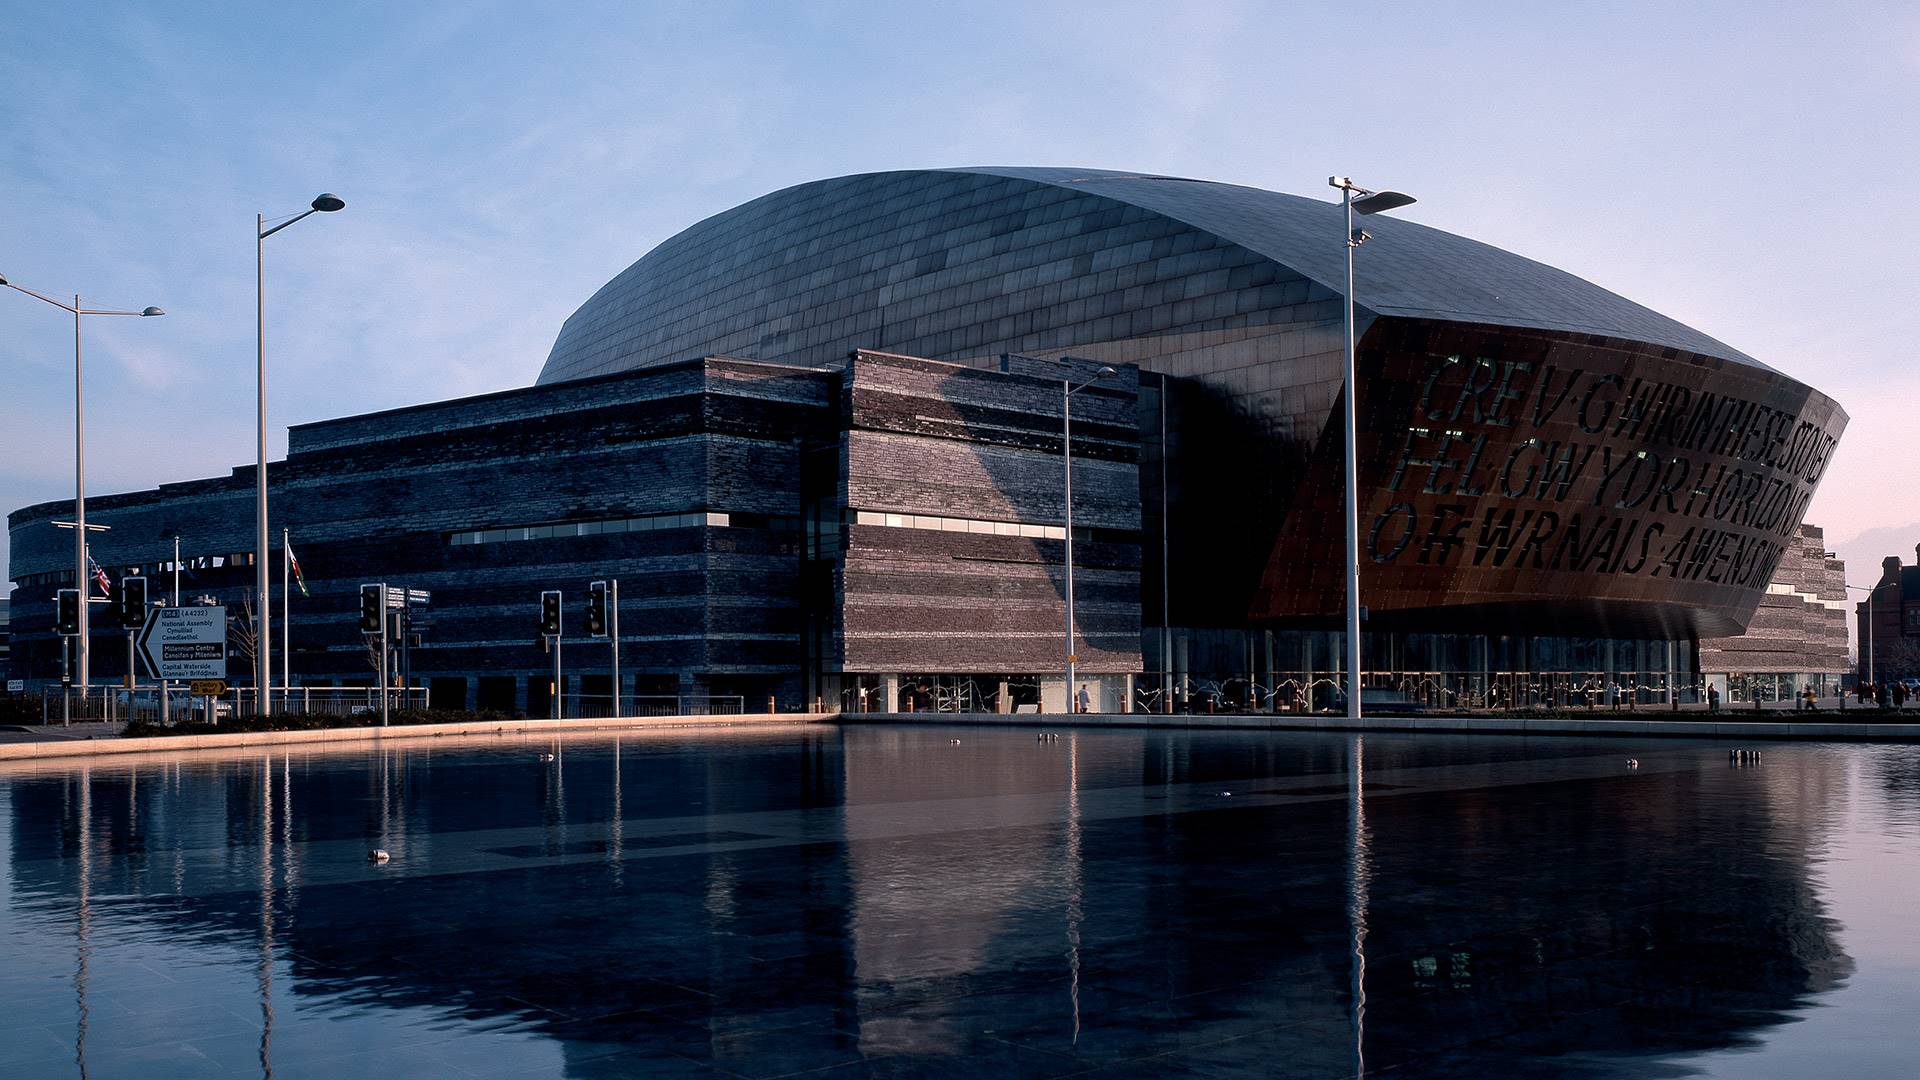 Millennium Centre, Cardiff